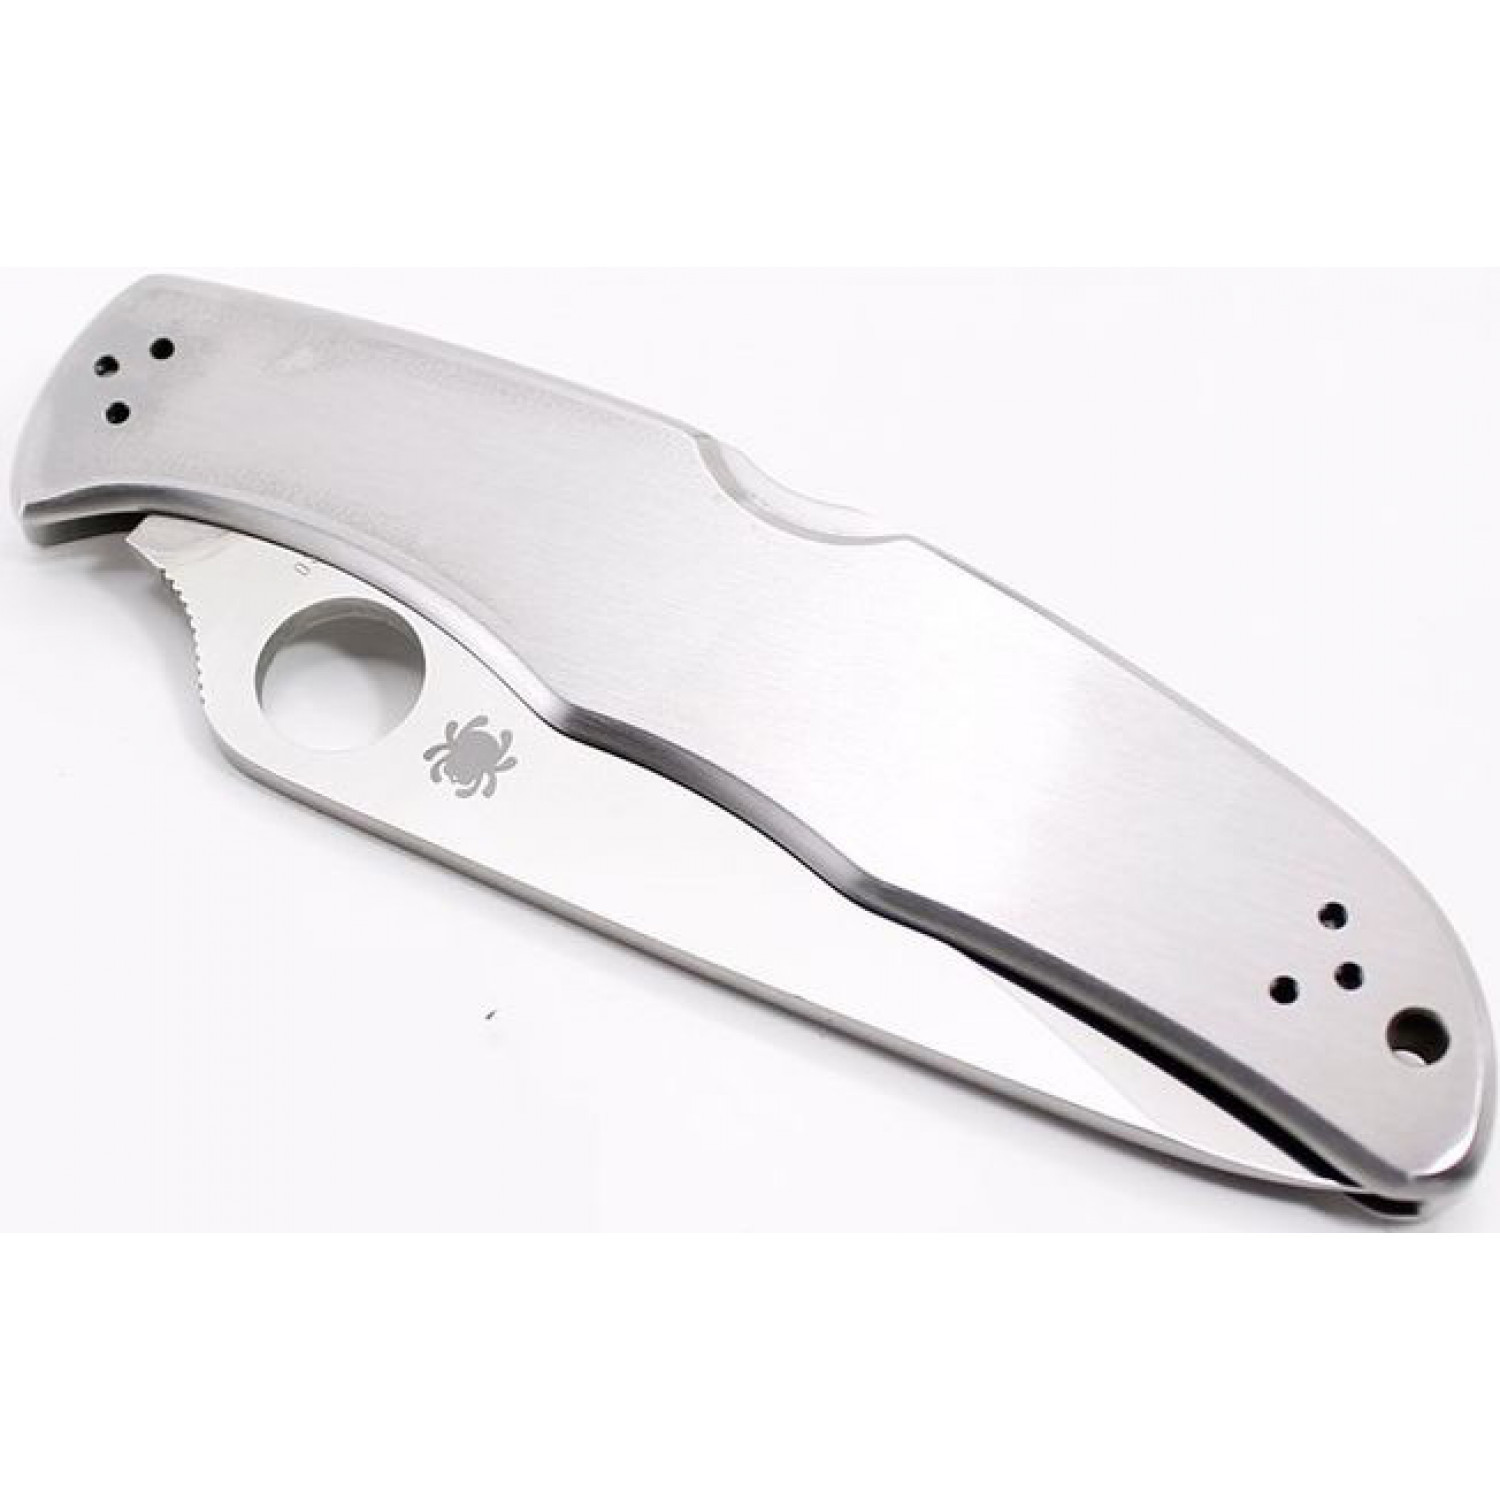 Складной нож Endura 4 - Spyderco 10P, сталь VG-10 Satin Plain, рукоять нержавеющая сталь - фото 8